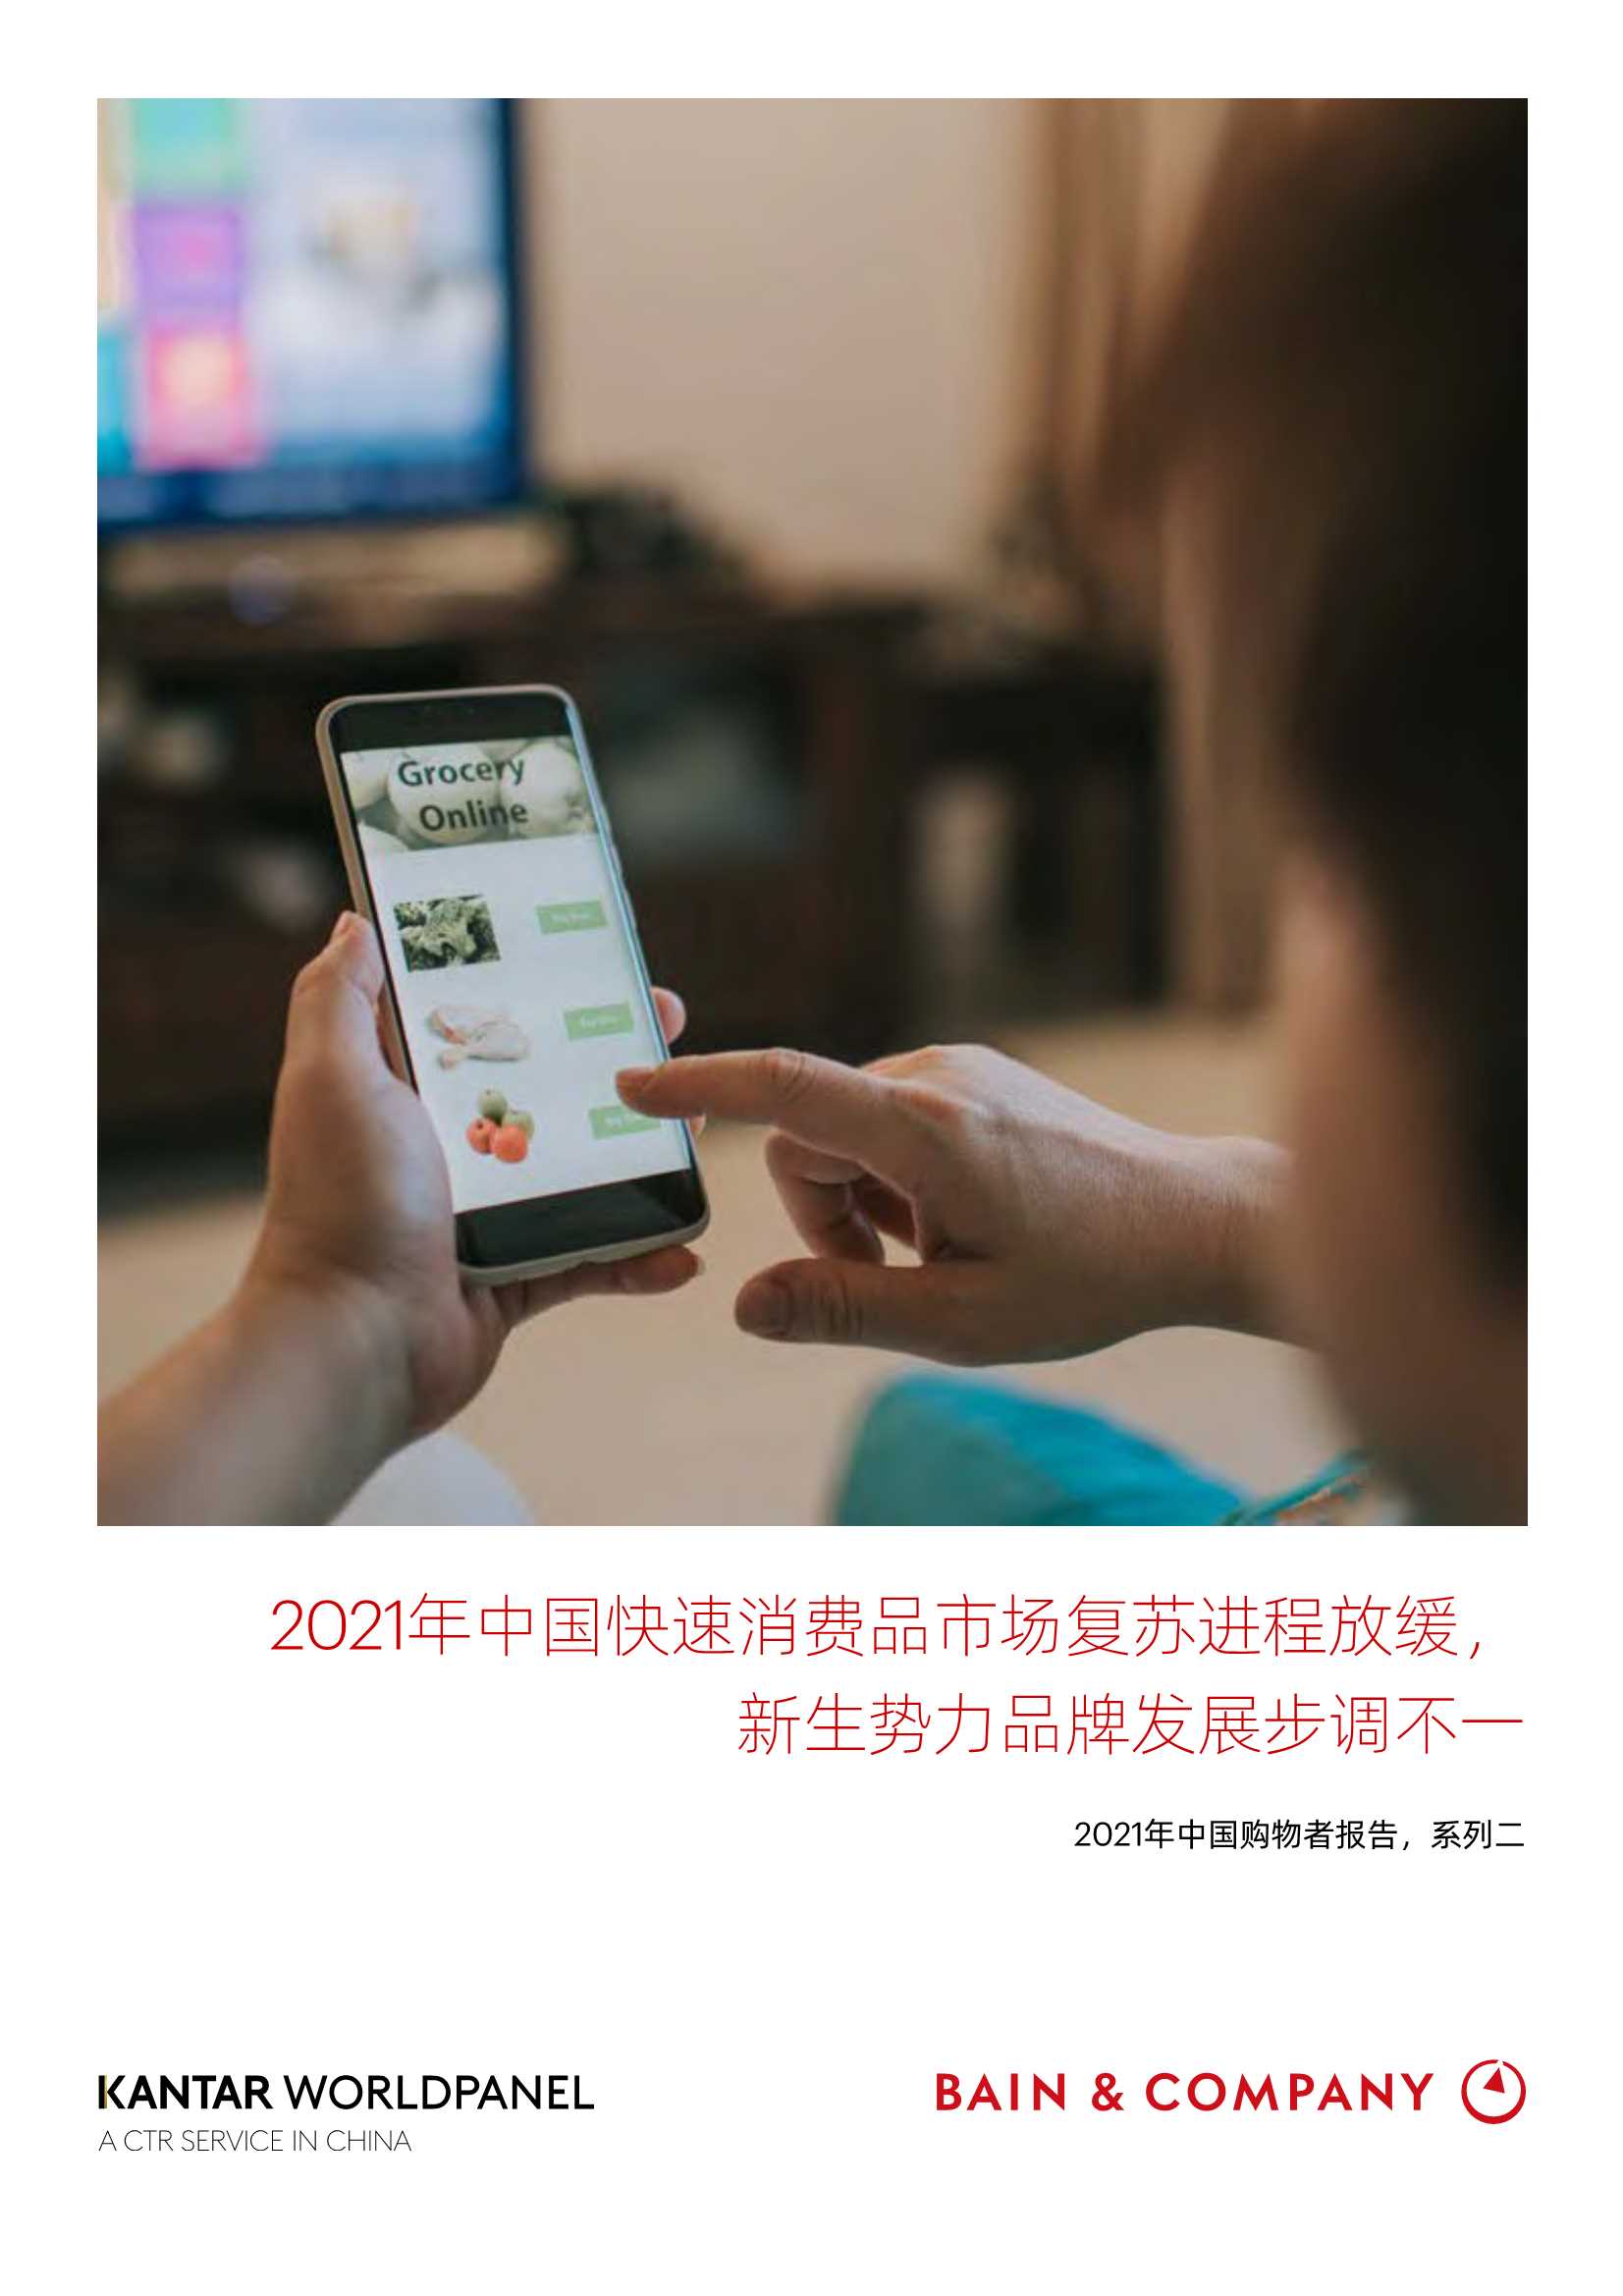 贝恩公司-消费行业2021年中国购物者报告，系列二：2021年中国快速消费品市场复苏进程放缓，新生势力品牌发展步调不一-2021.12-48页